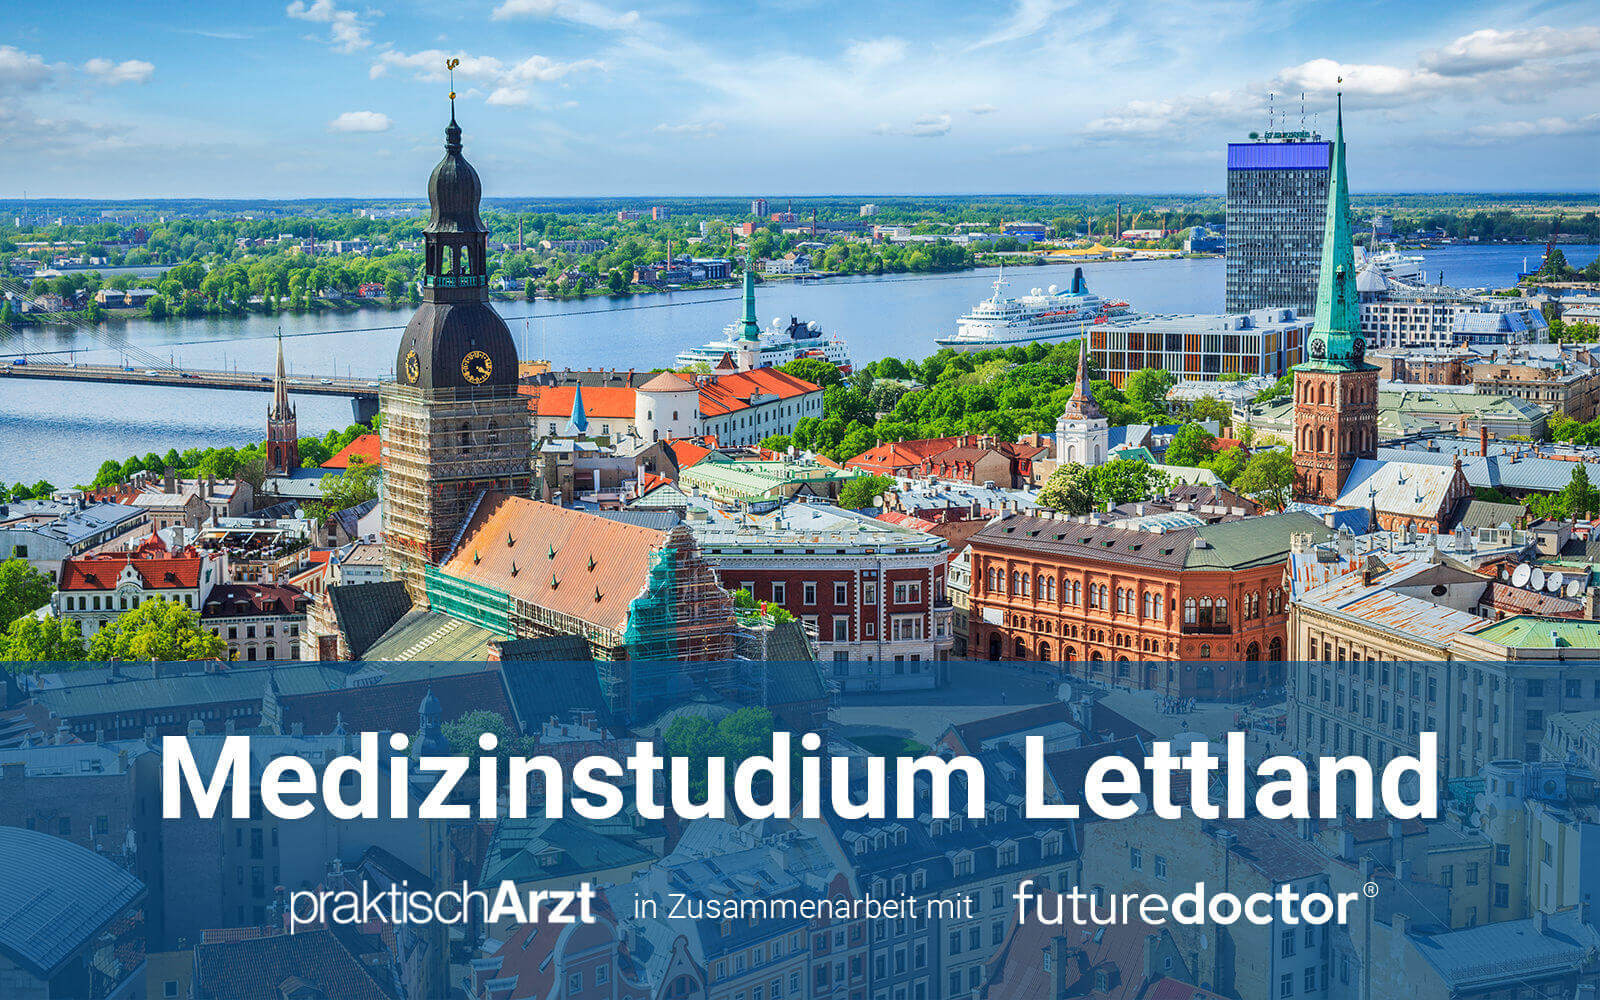 Medizinstudium Lettland